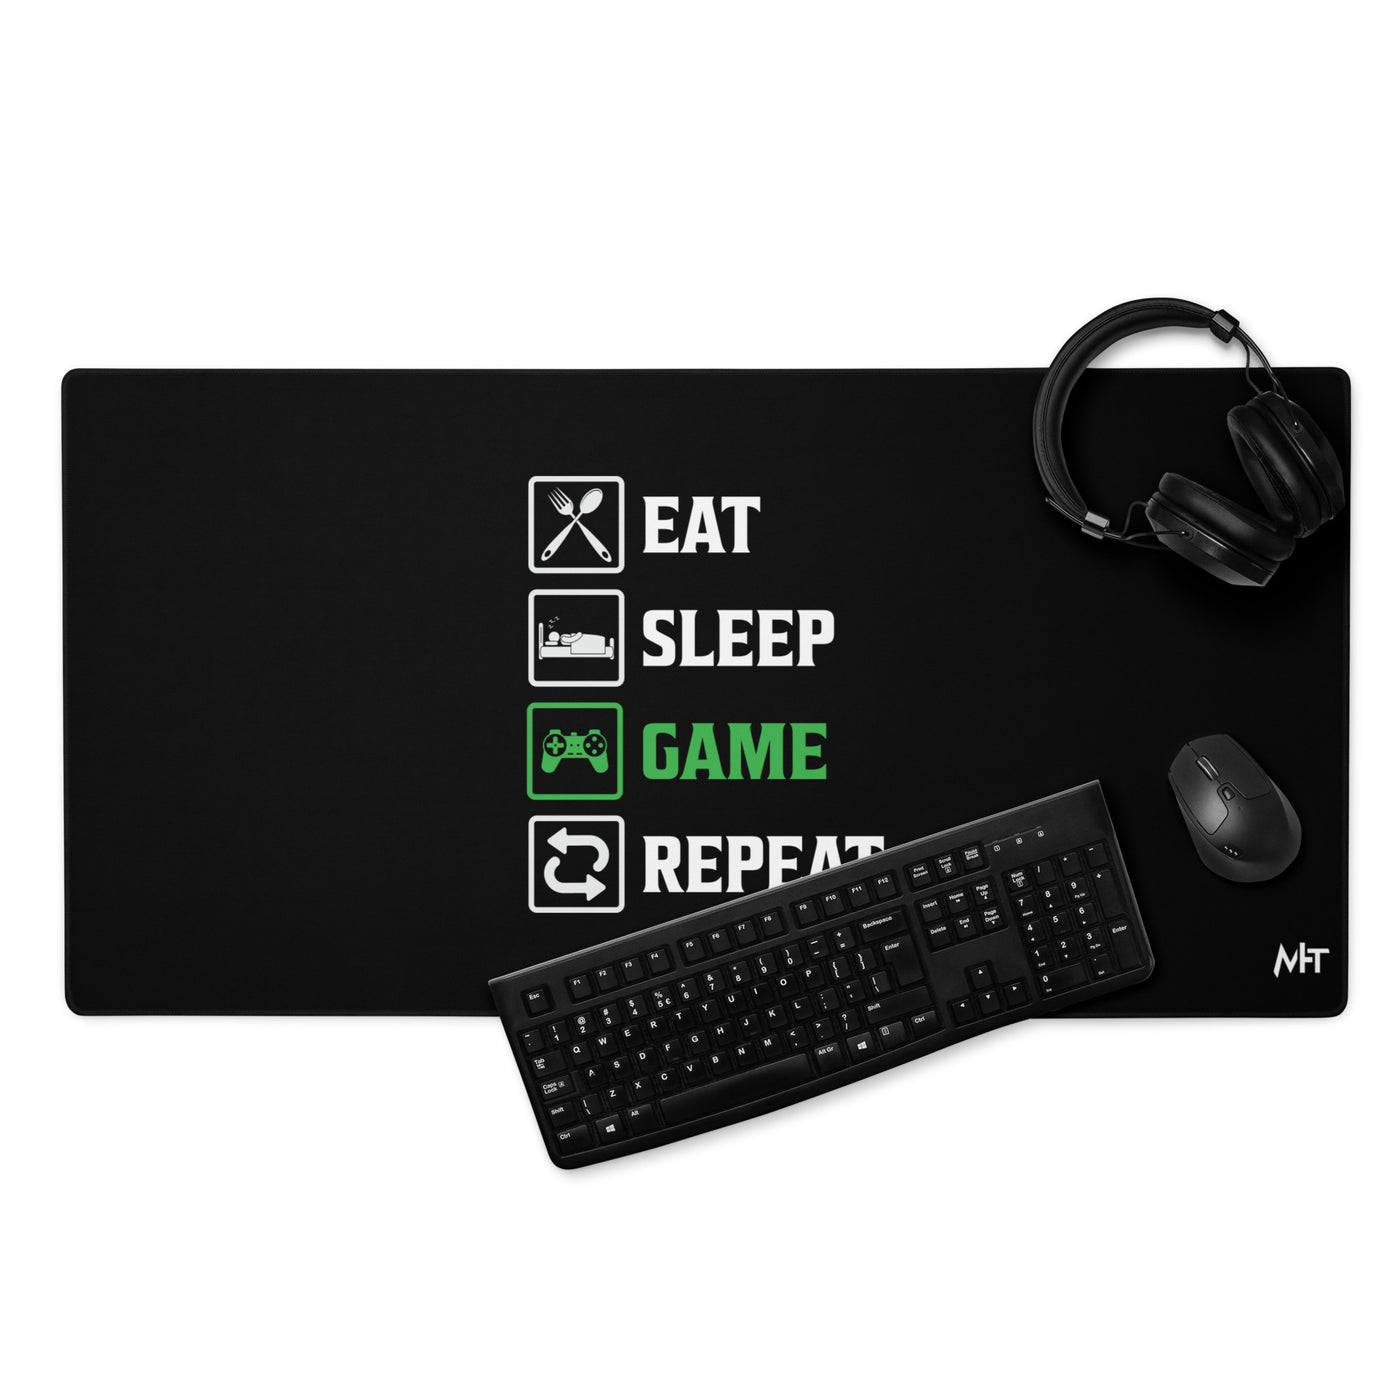 Eat, Sleep, GAME, Repeat - Desk Mat